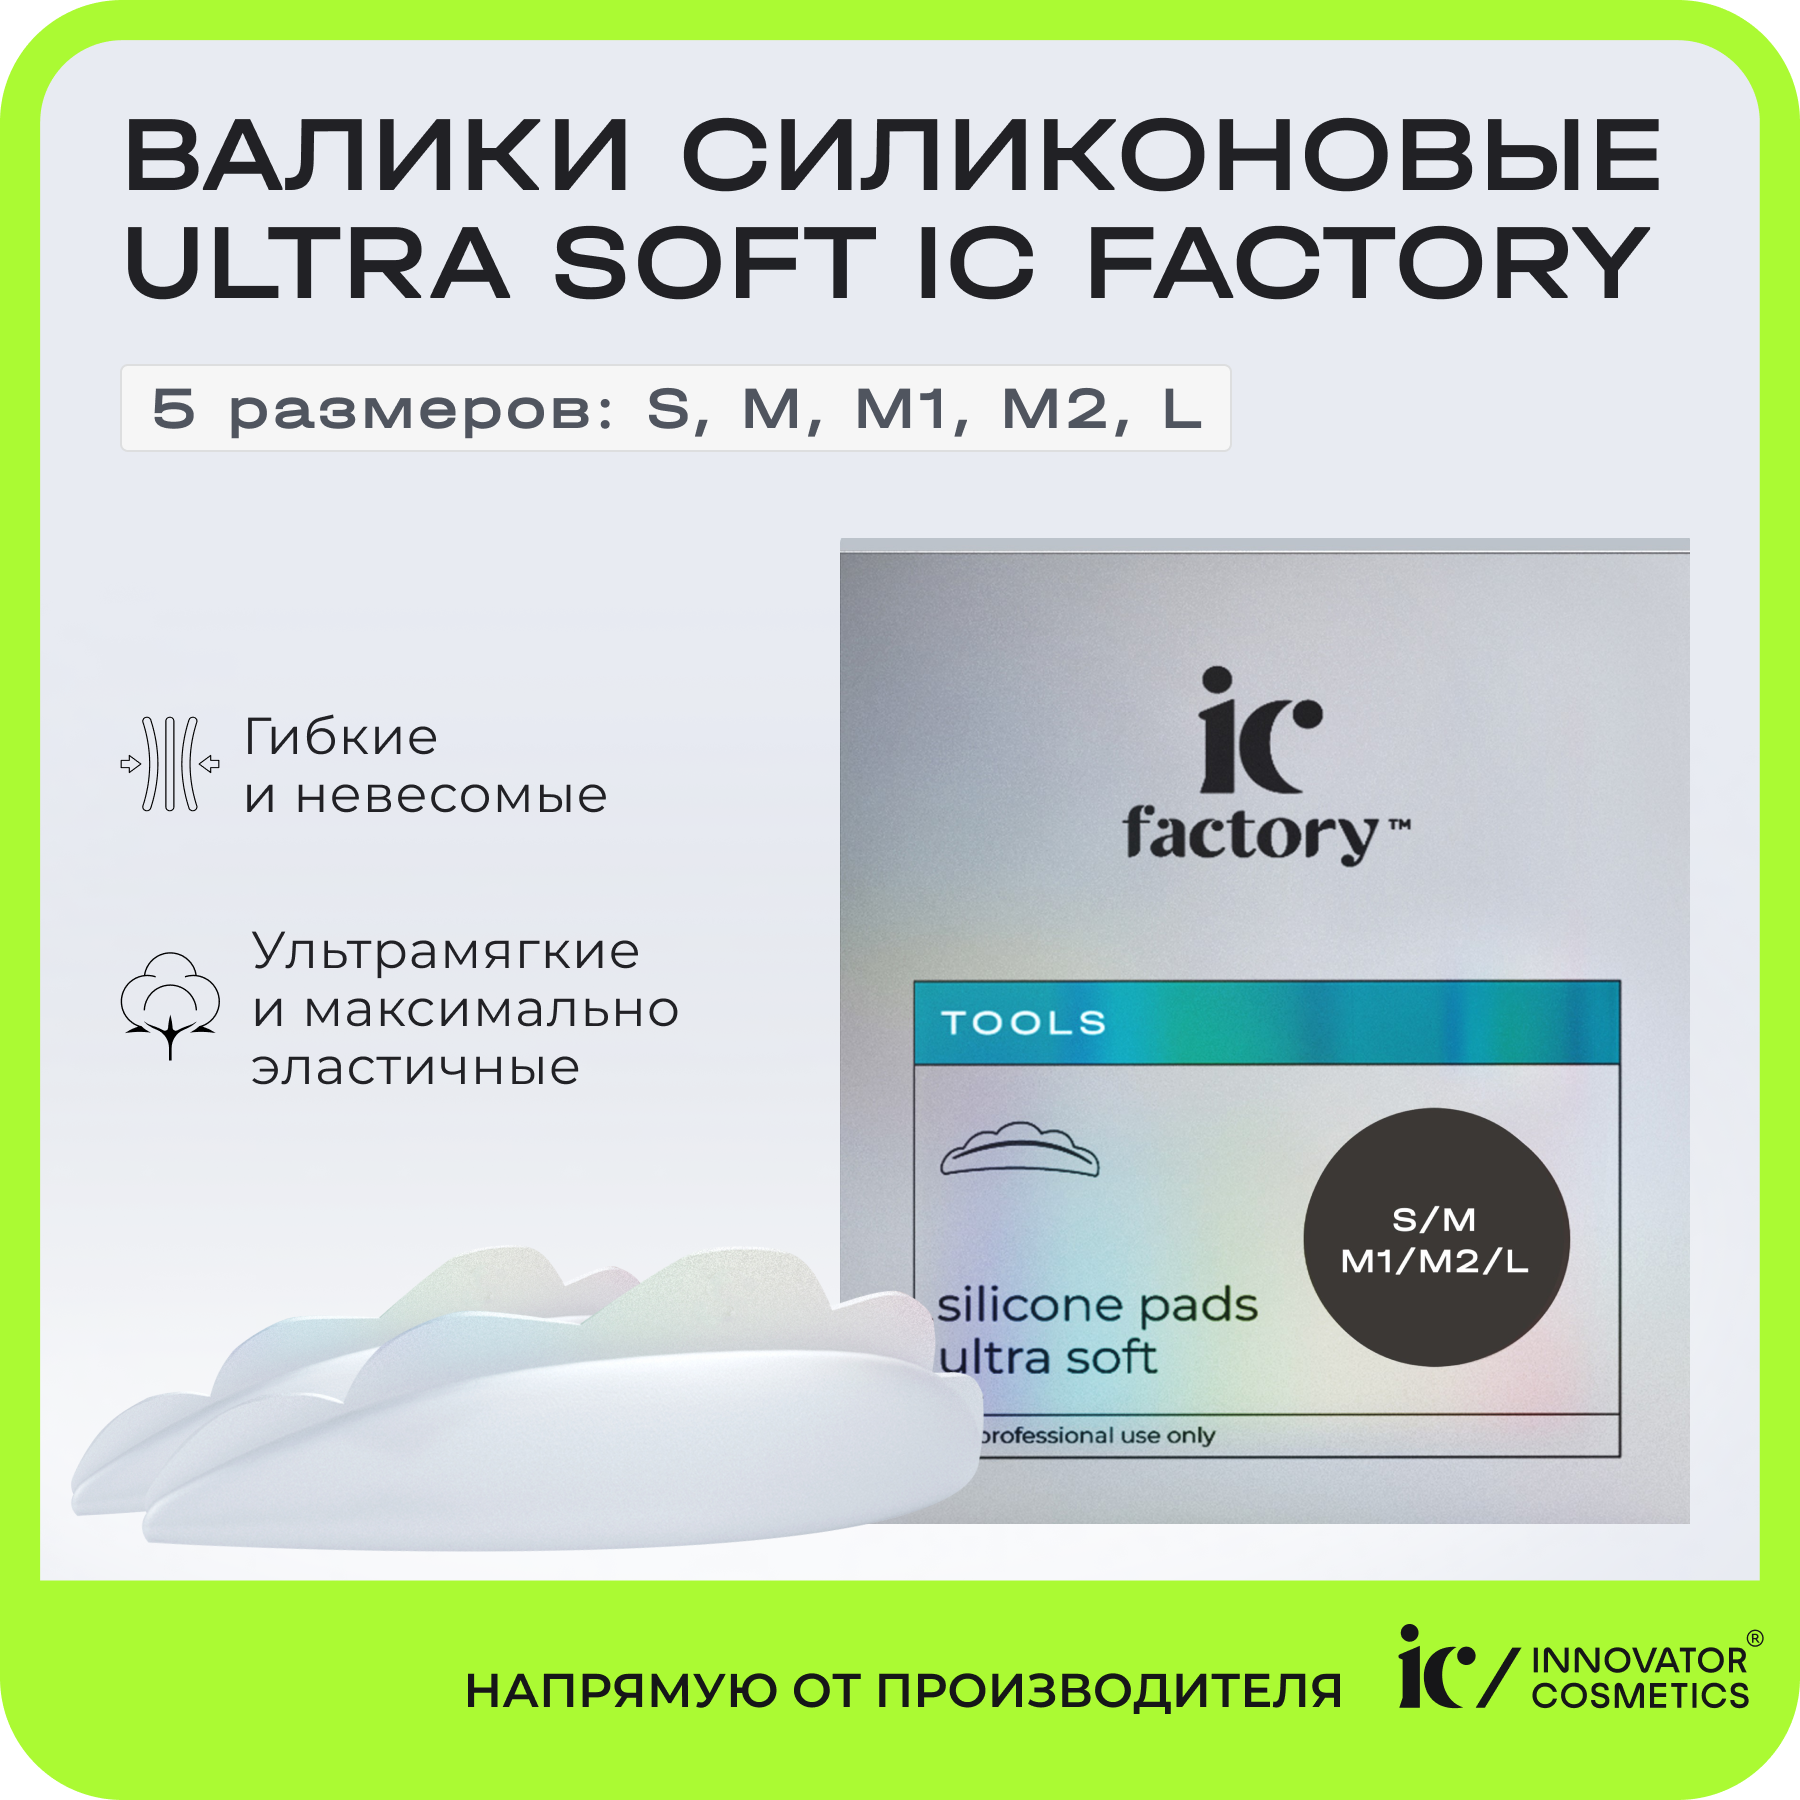 Набор валиков силиконовых Innovator Cosmetics Ultra Soft IC FACTORY, 5 размеров валики силиконовые ultra soft m